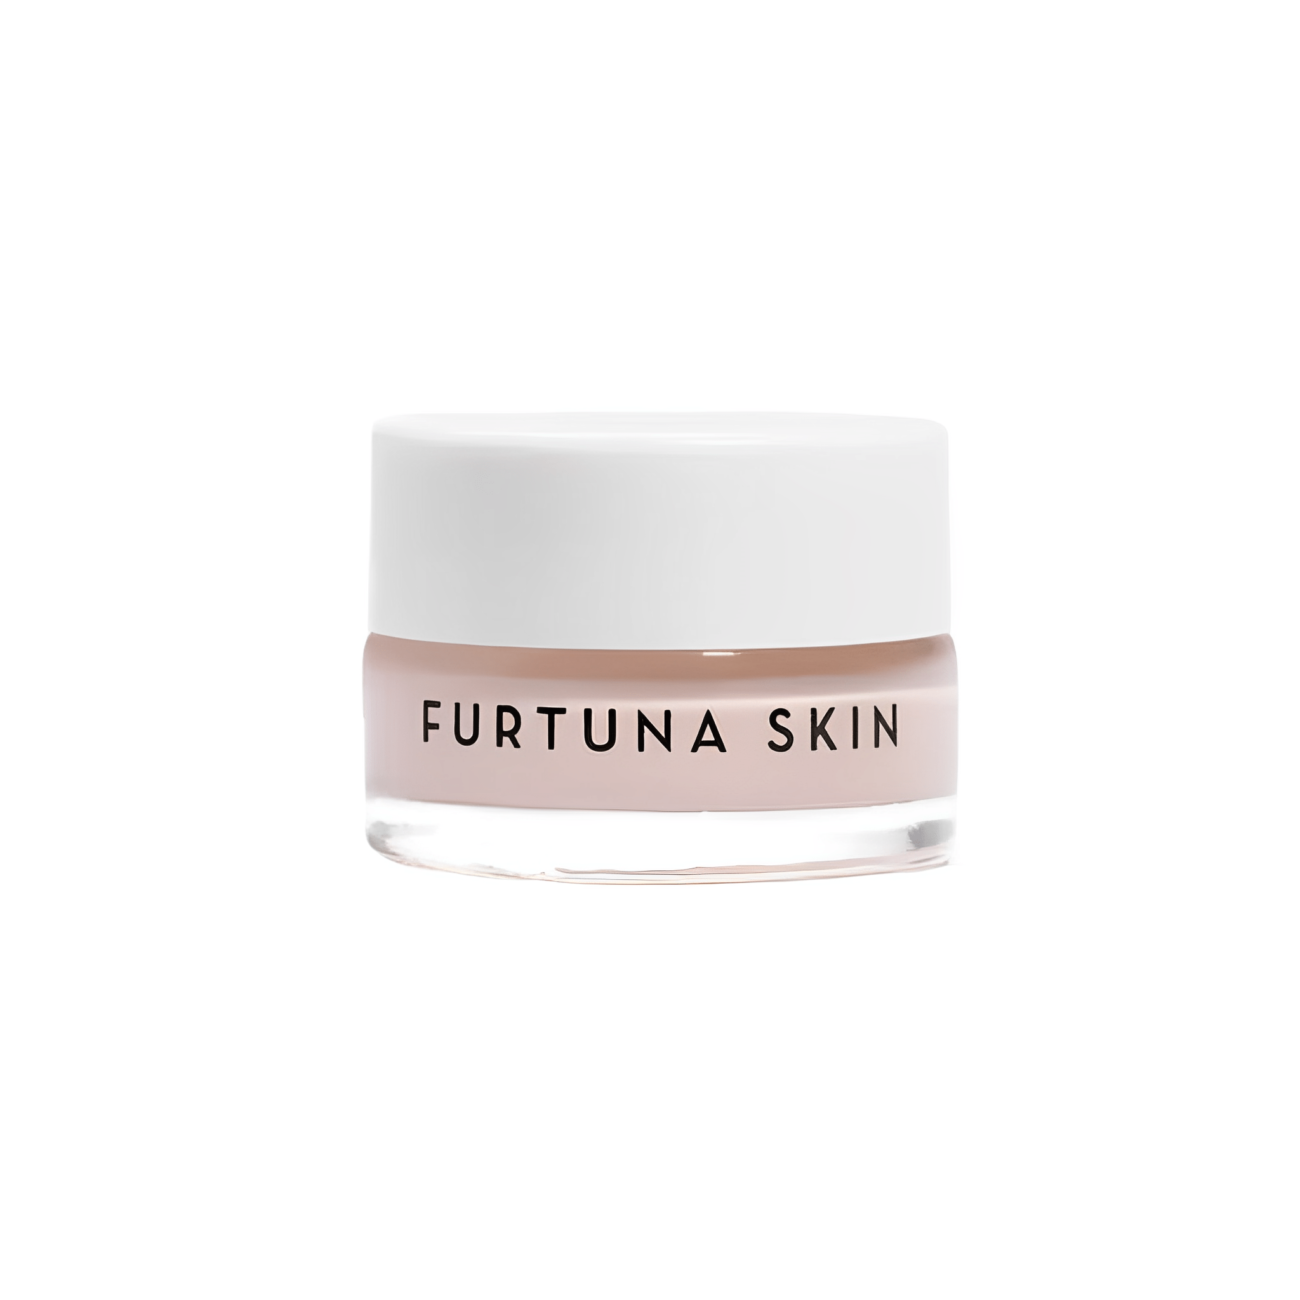 Nightly Renewal Cream trial size-Furtuna Skin